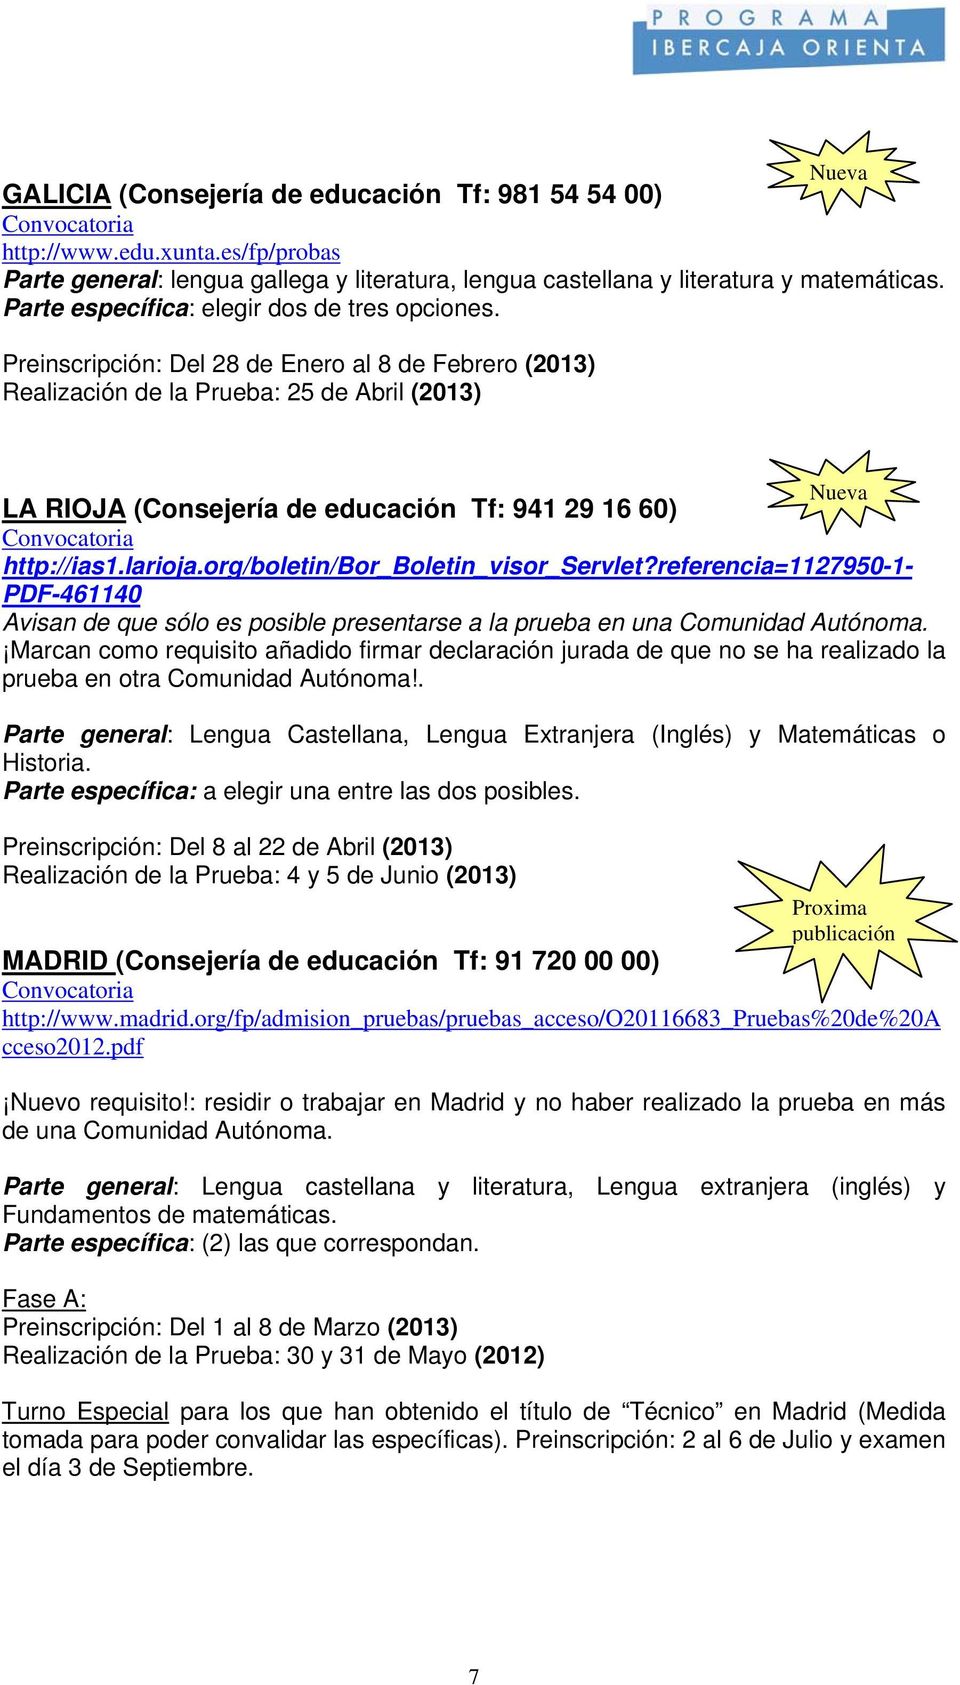 Preinscripción: Del 28 de Enero al 8 de Febrero (2013) Realización de la Prueba: 25 de Abril (2013) Nueva LA RIOJA (Consejería de educación Tf: 941 29 16 60) http://ias1.larioja.